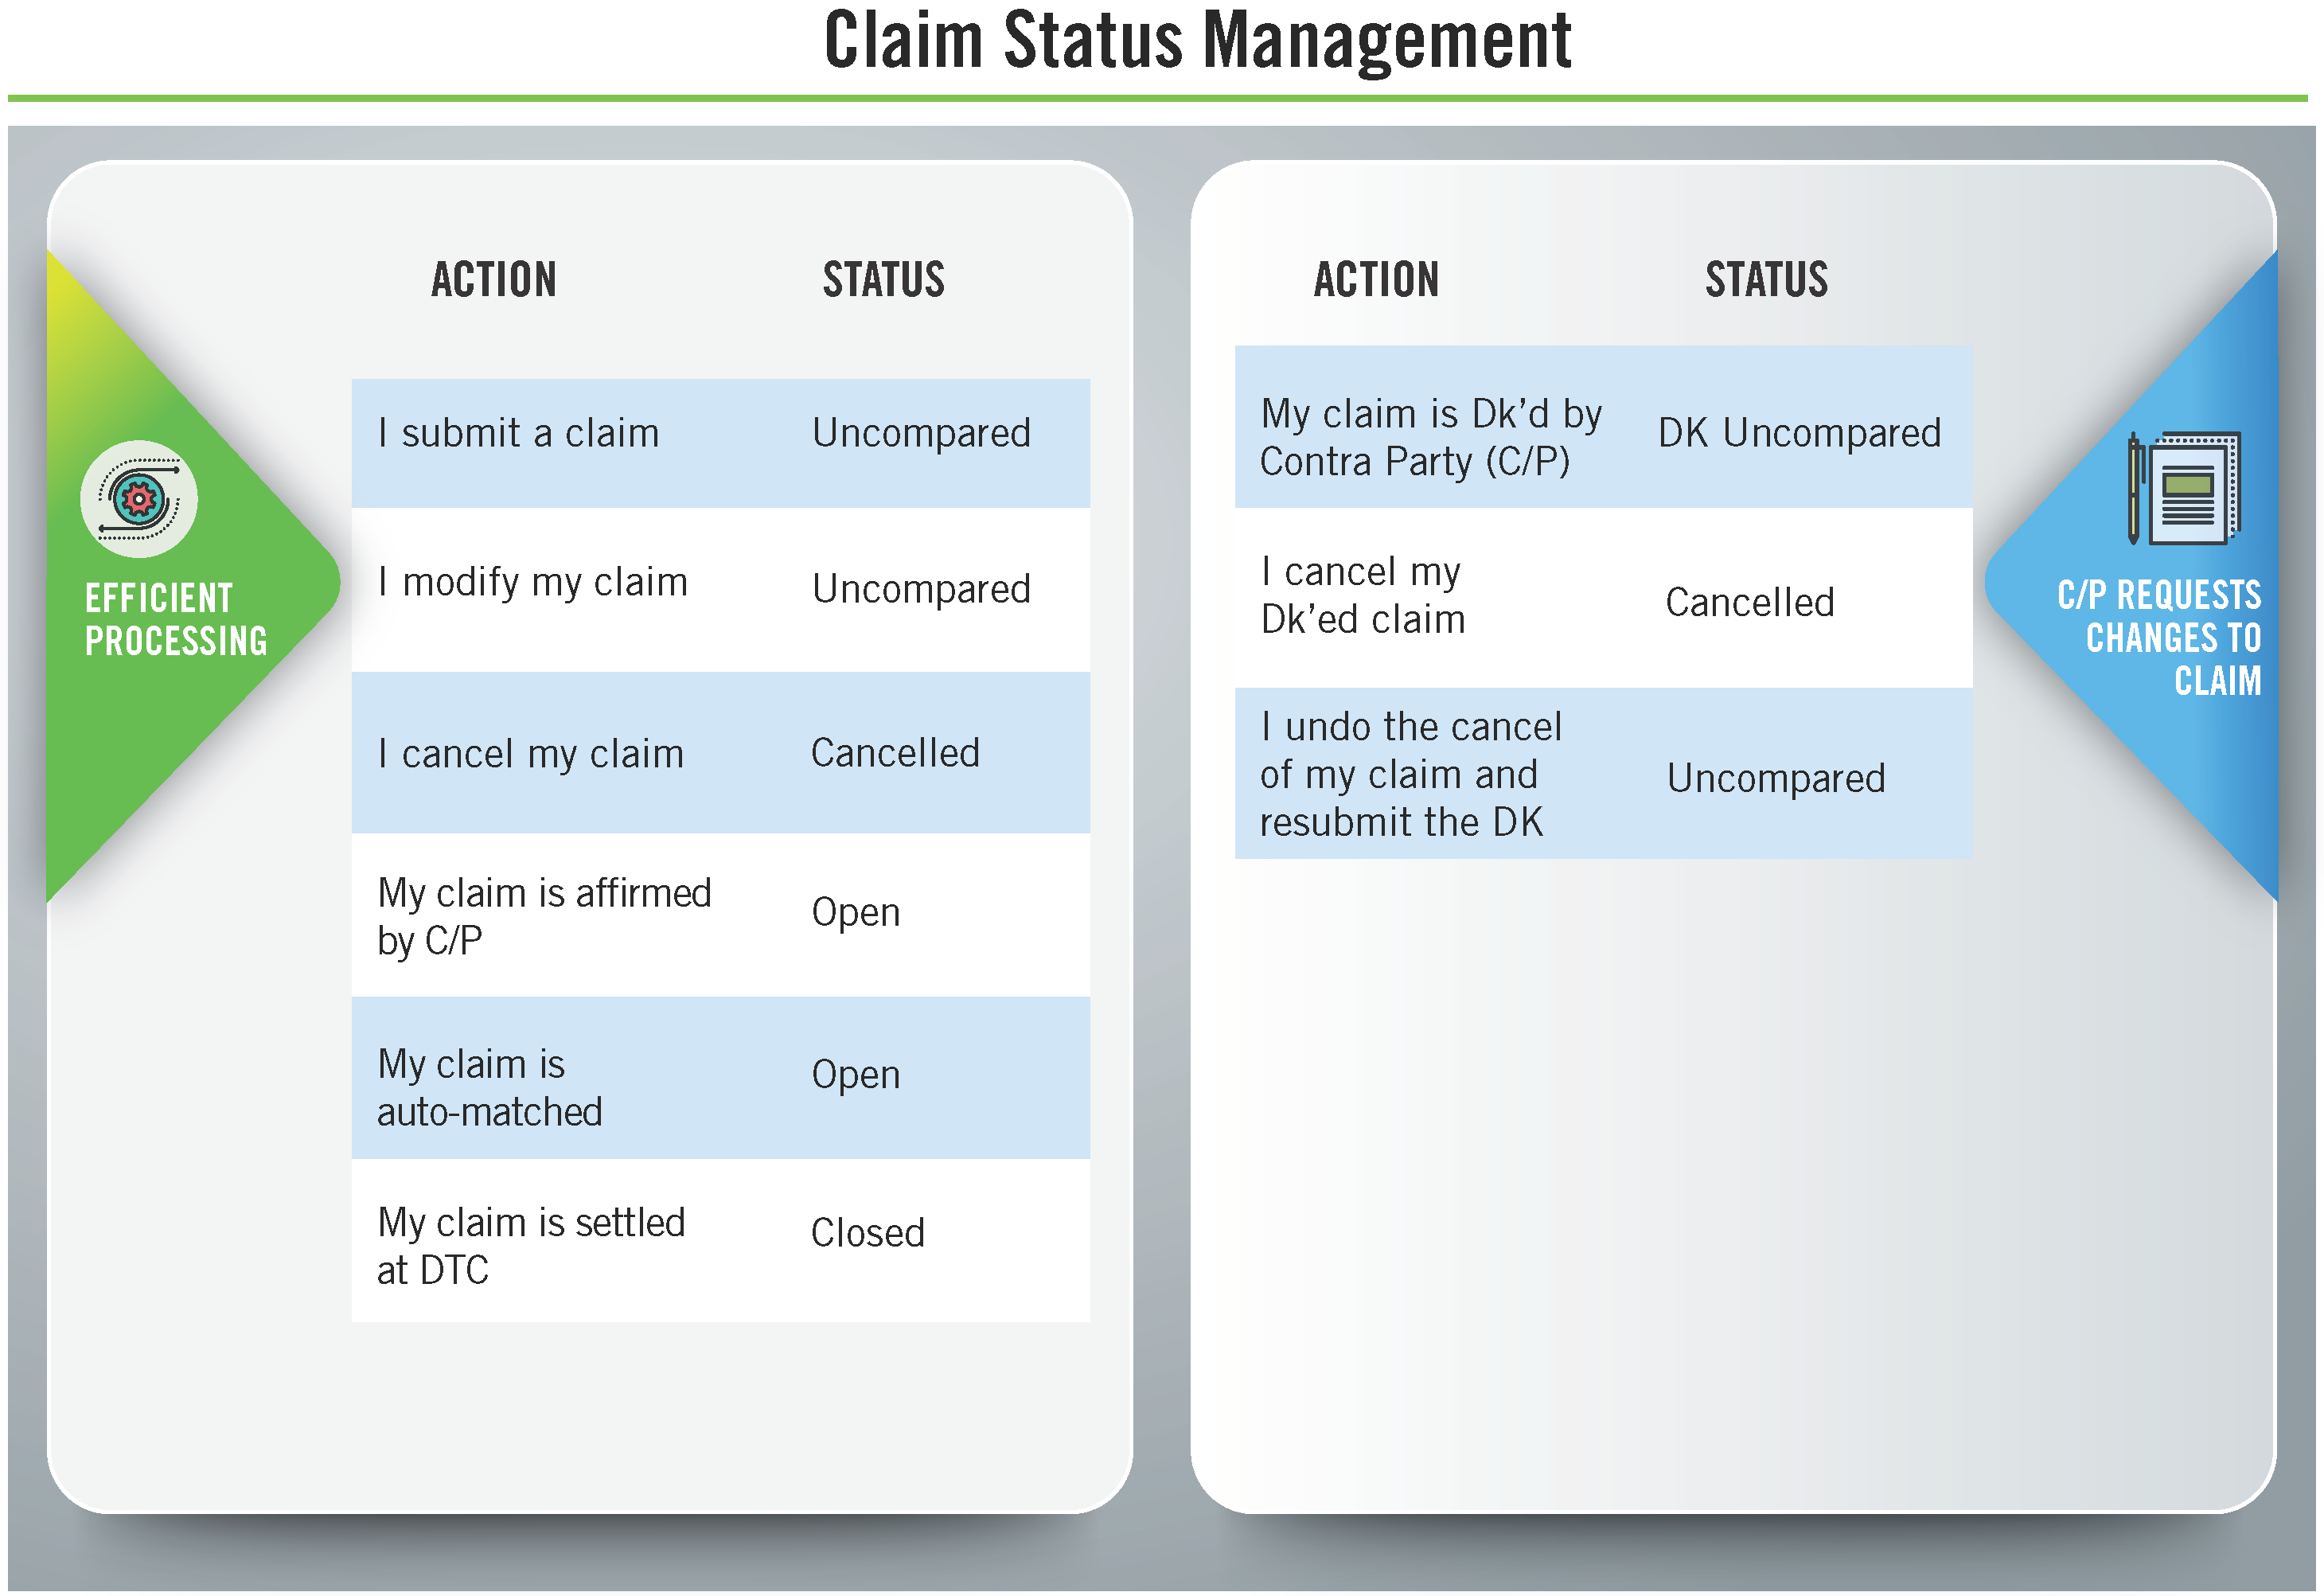 DTCC Claim Status Management